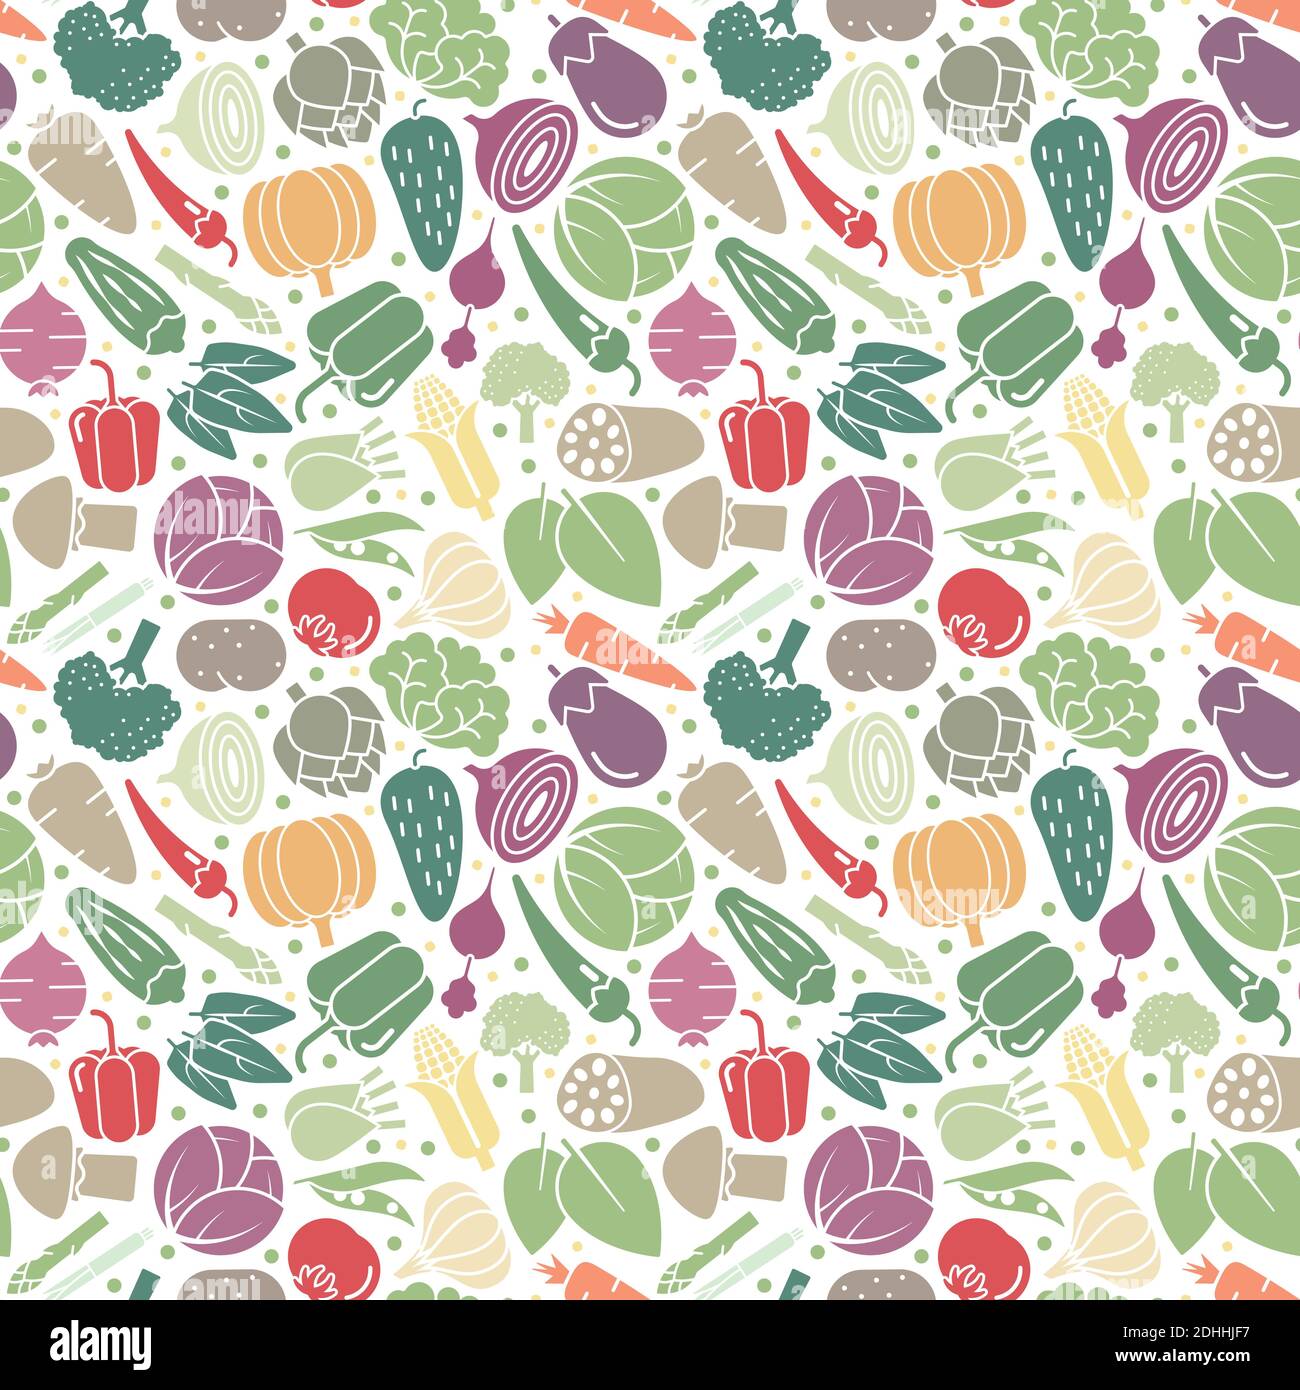 Vielzahl von gesunden Gemüse nahtlose Vektor-Muster-Tapete. Frische Lebensmittel Hintergrund. Stock Vektor